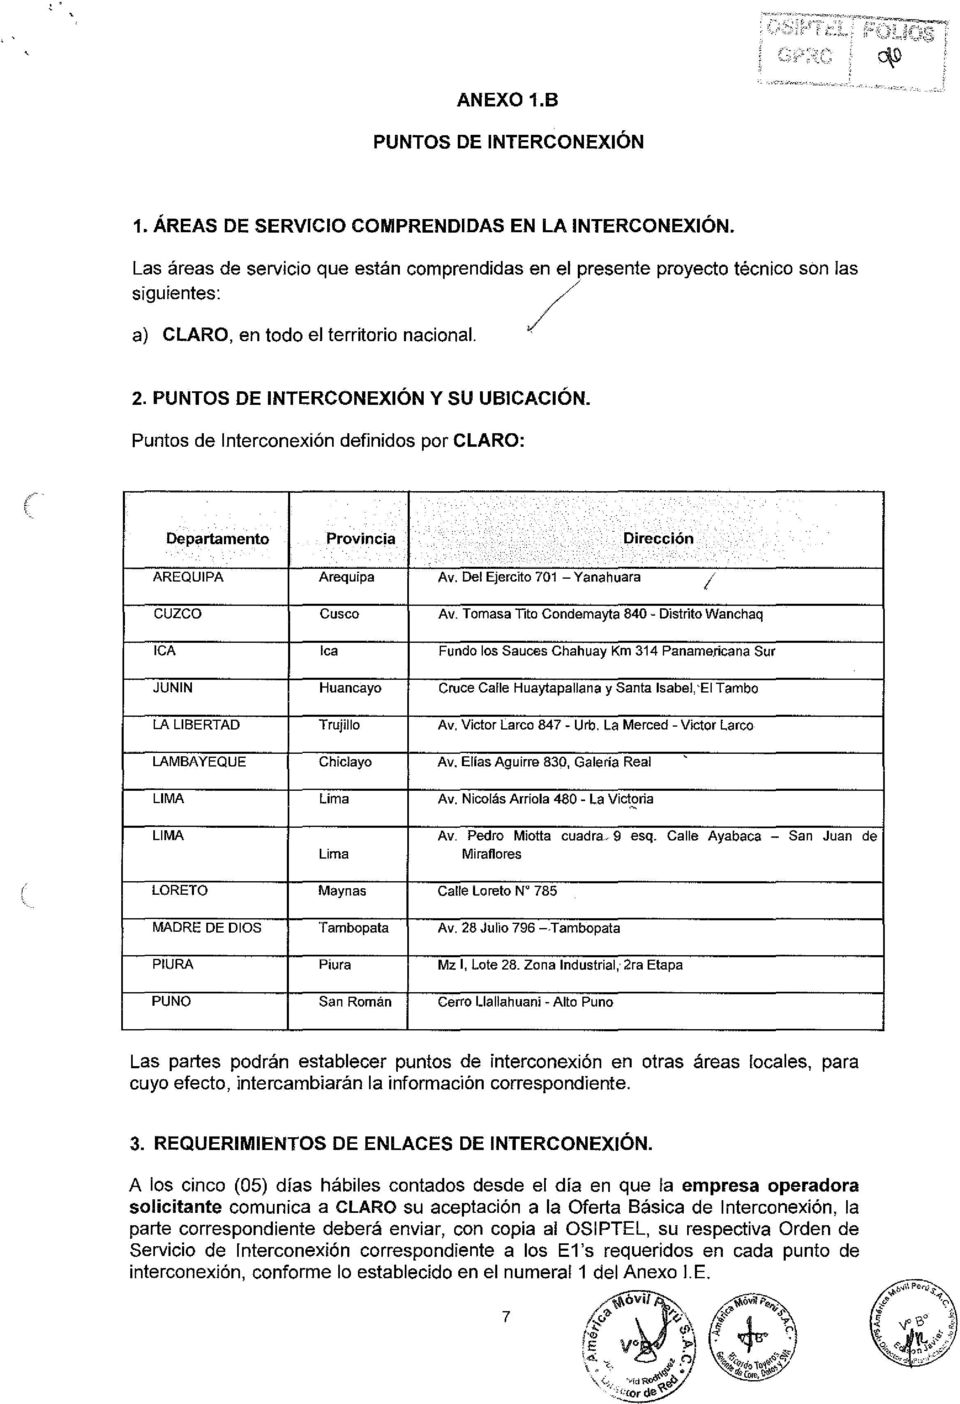 Puntos de Interconexión definidos por CLARO: ( Departamento Provincia Dirección AREQUIPA Arequipa Av. Del Ejercito 701 Yanahuara 1 cuzco Cusca Av.